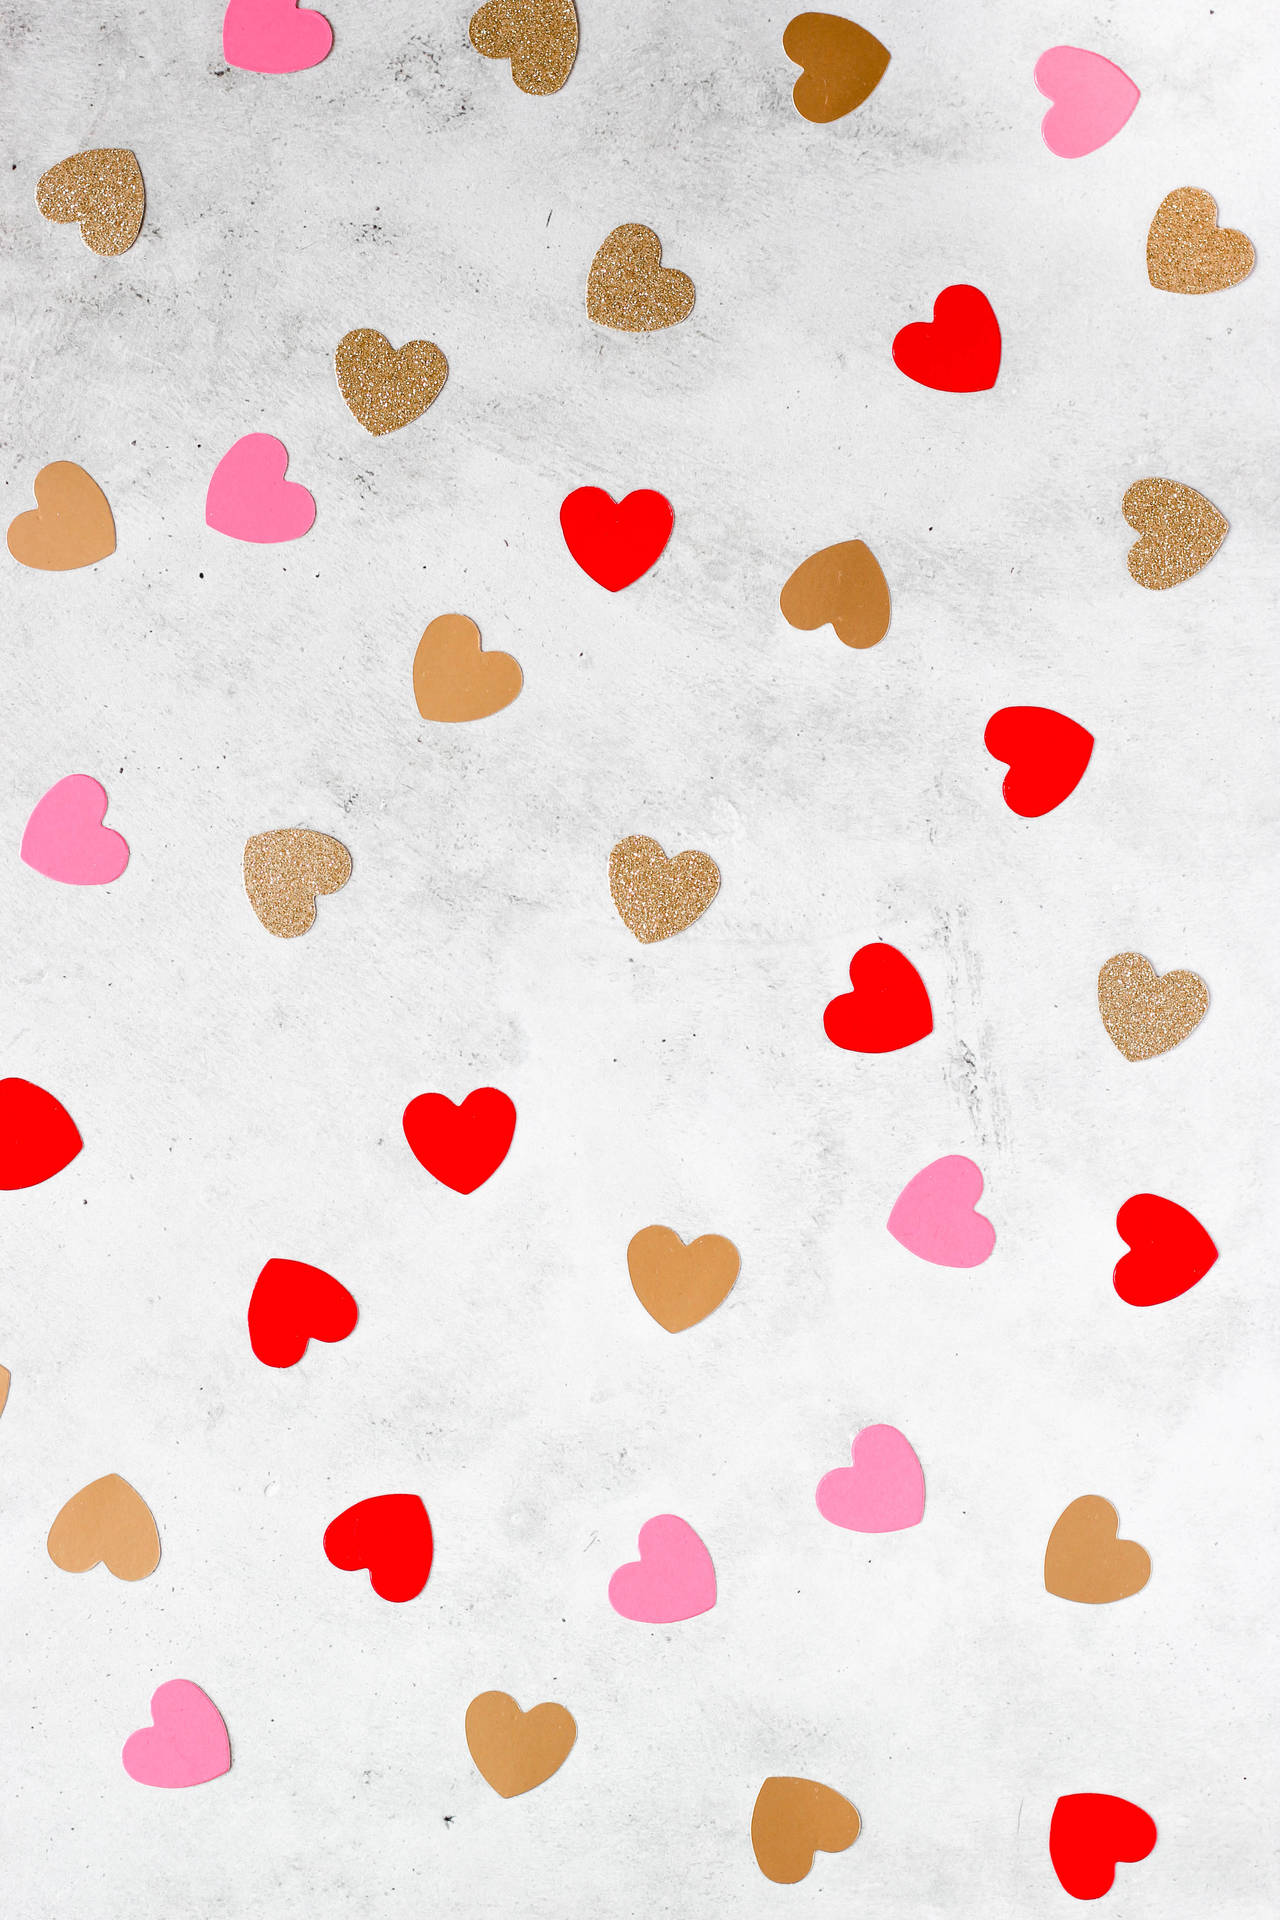 Valentine's Day Confetti Hearts Wallpaper